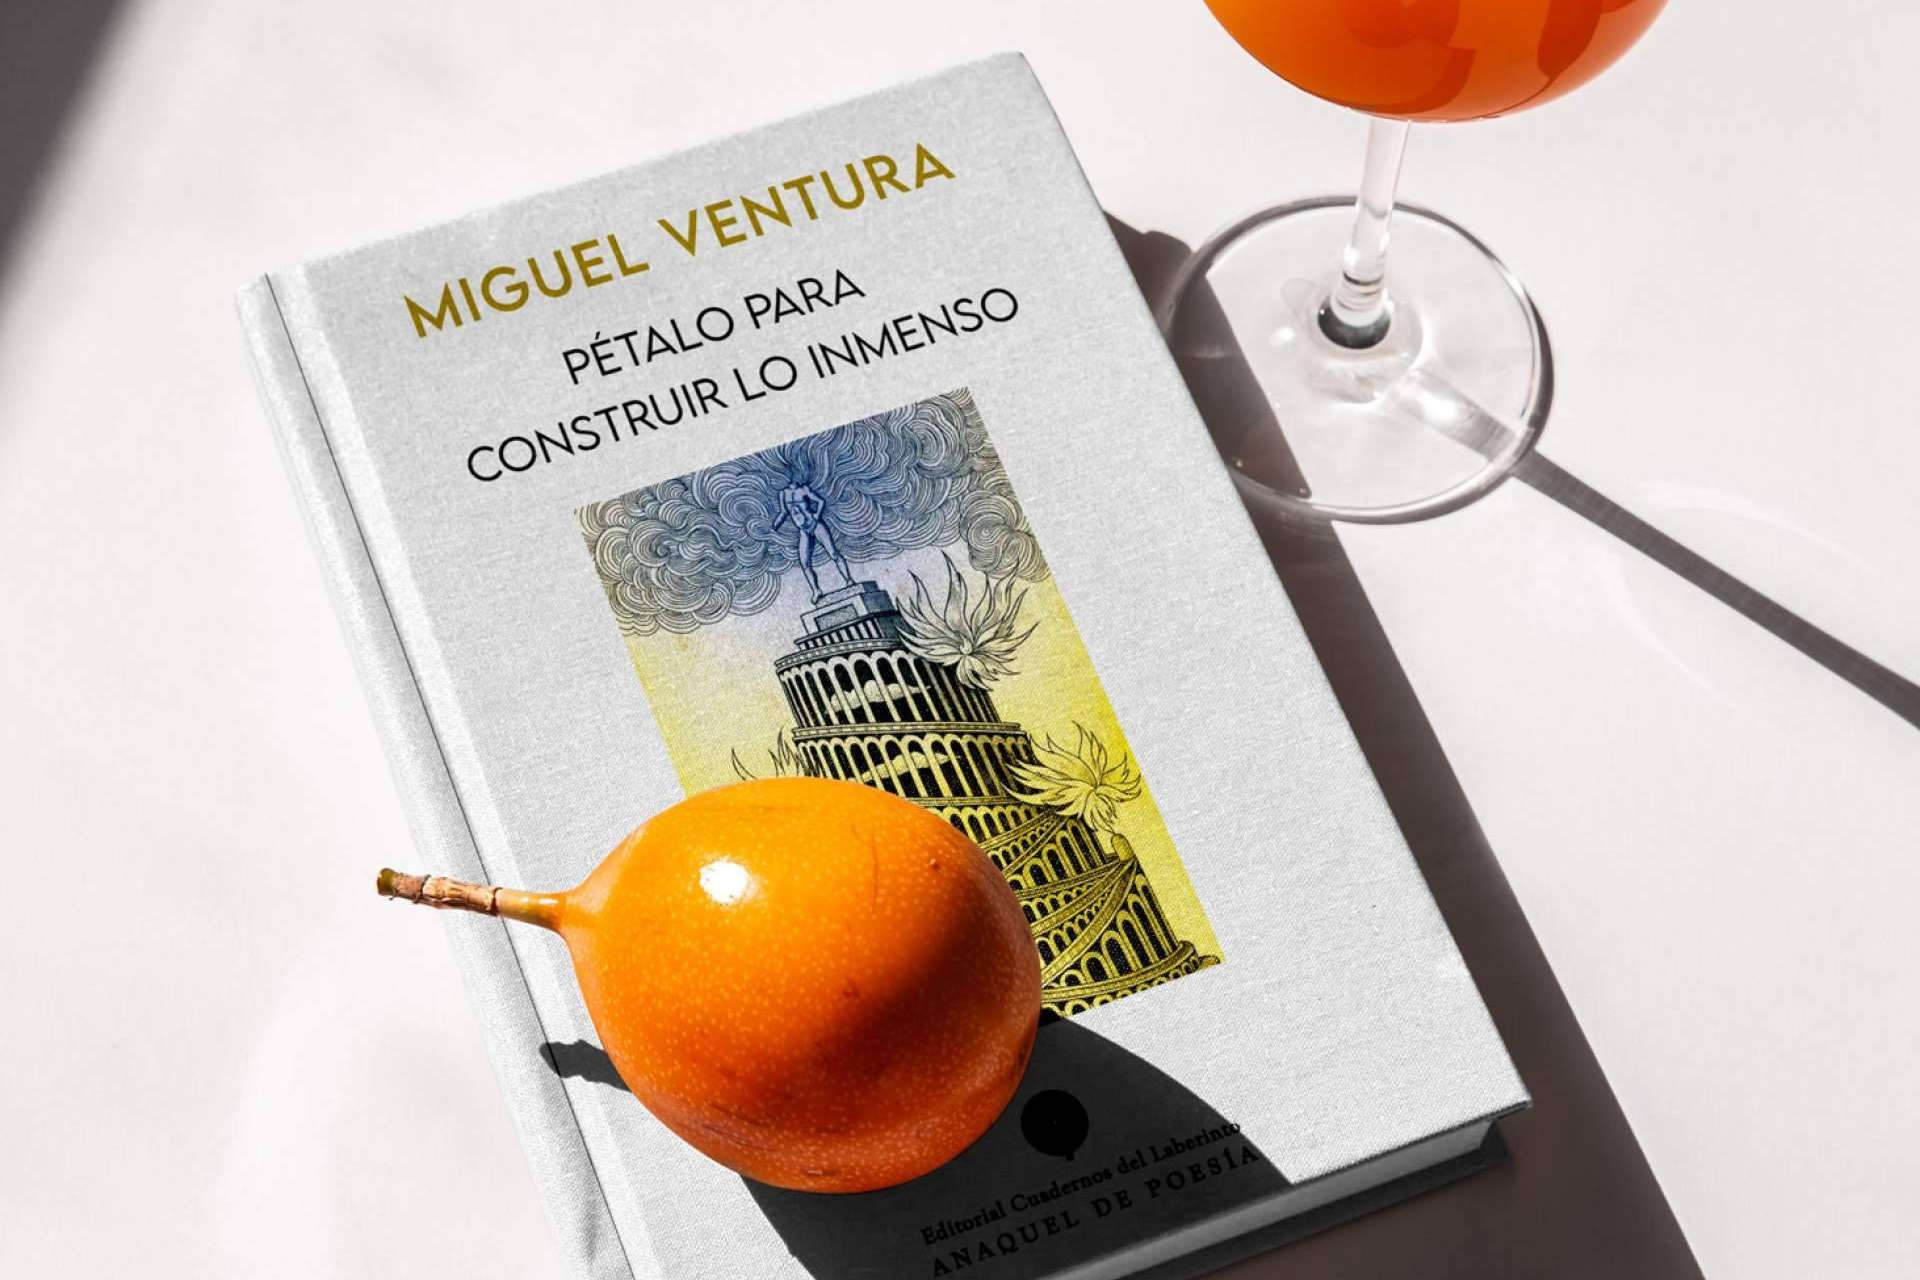  'Pétalo para construir lo inmenso', la poesía de Miguel Ventura llega a las librerías 